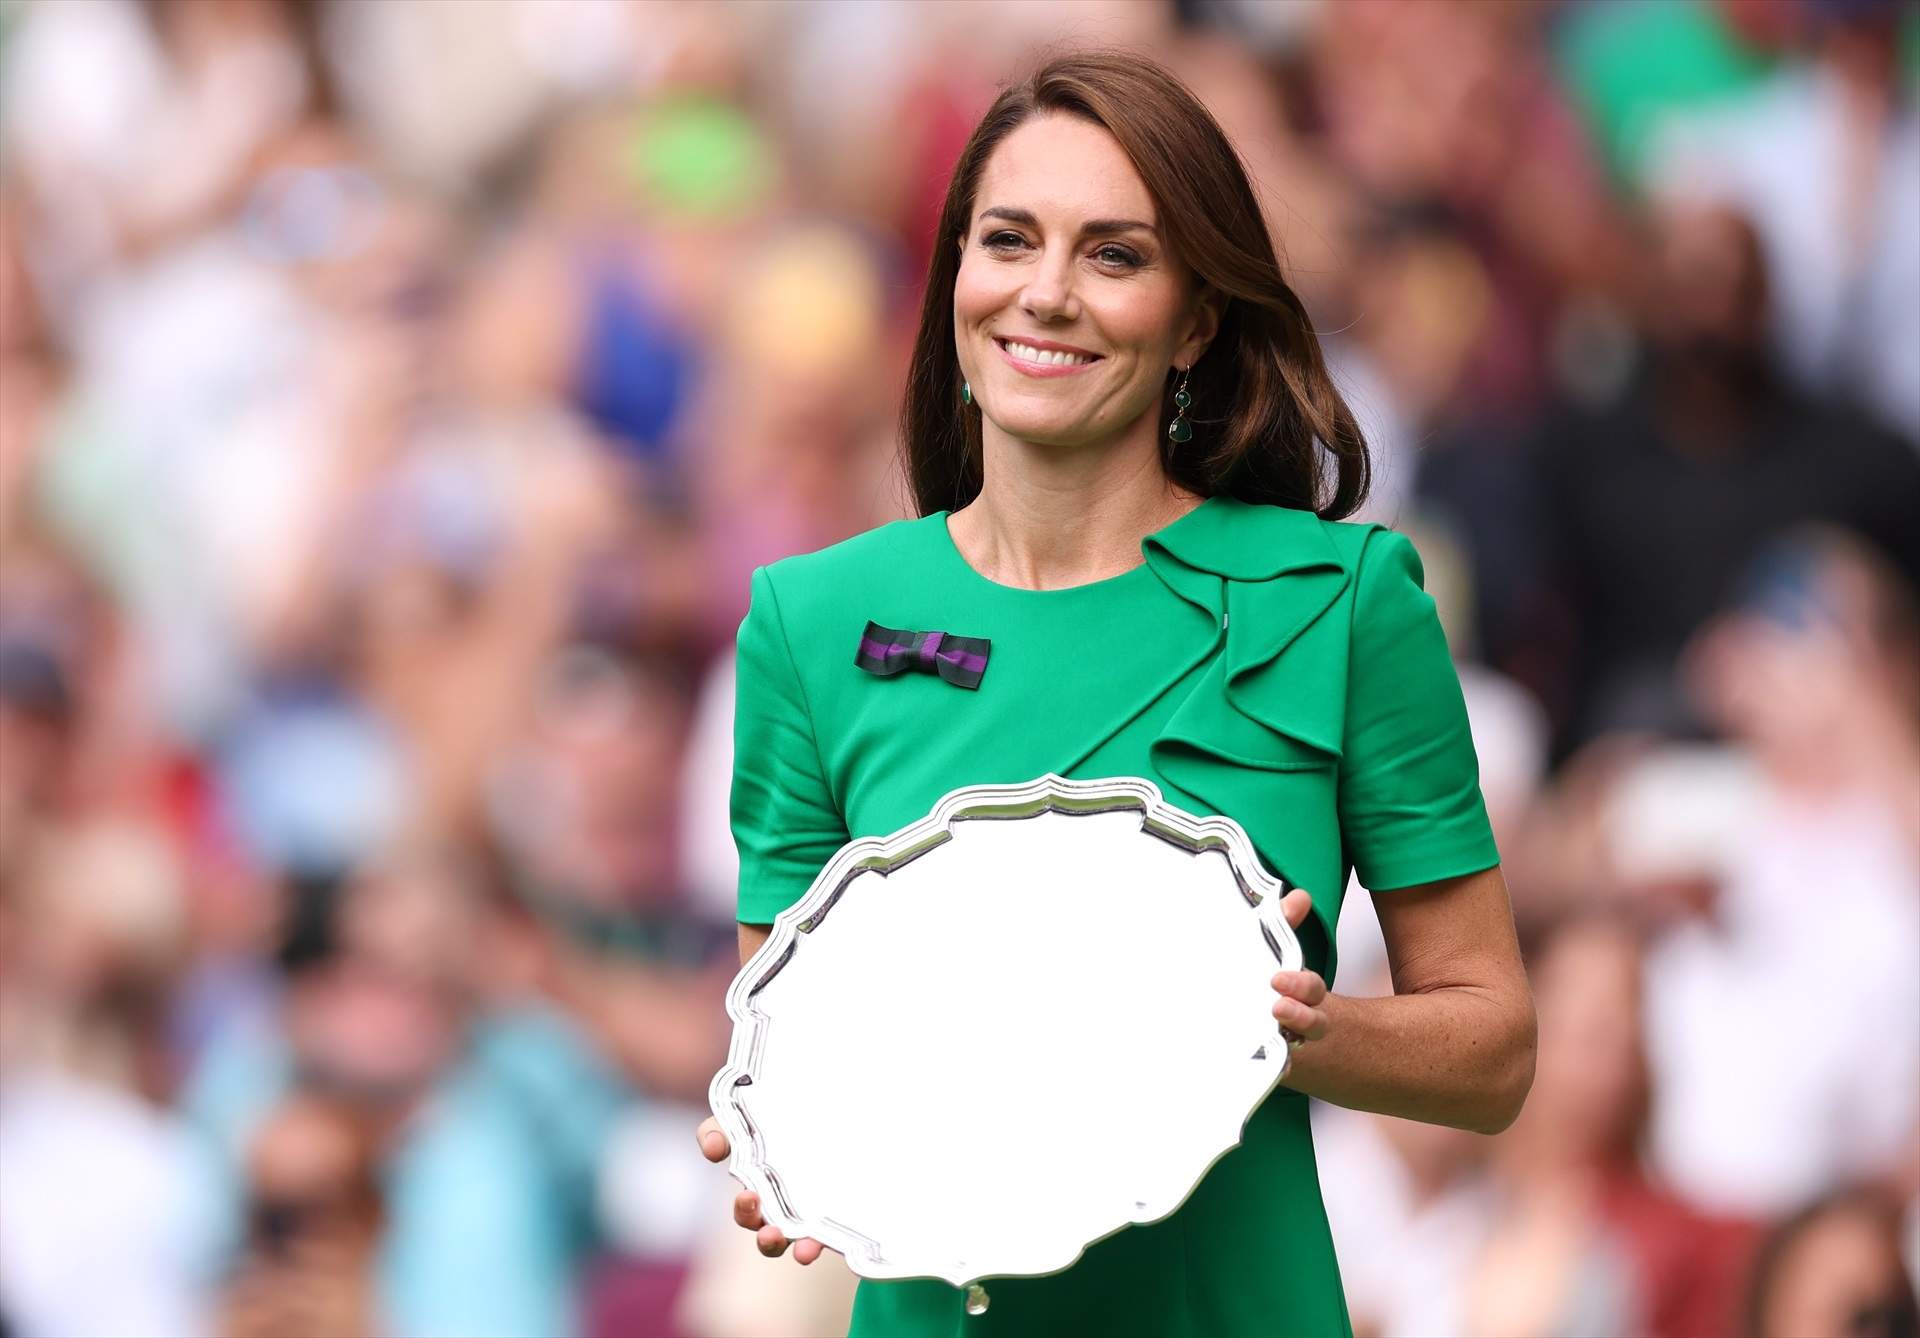 Kate Middleton reaparecerá este domingo para entregar el trofeo de Wimbledon